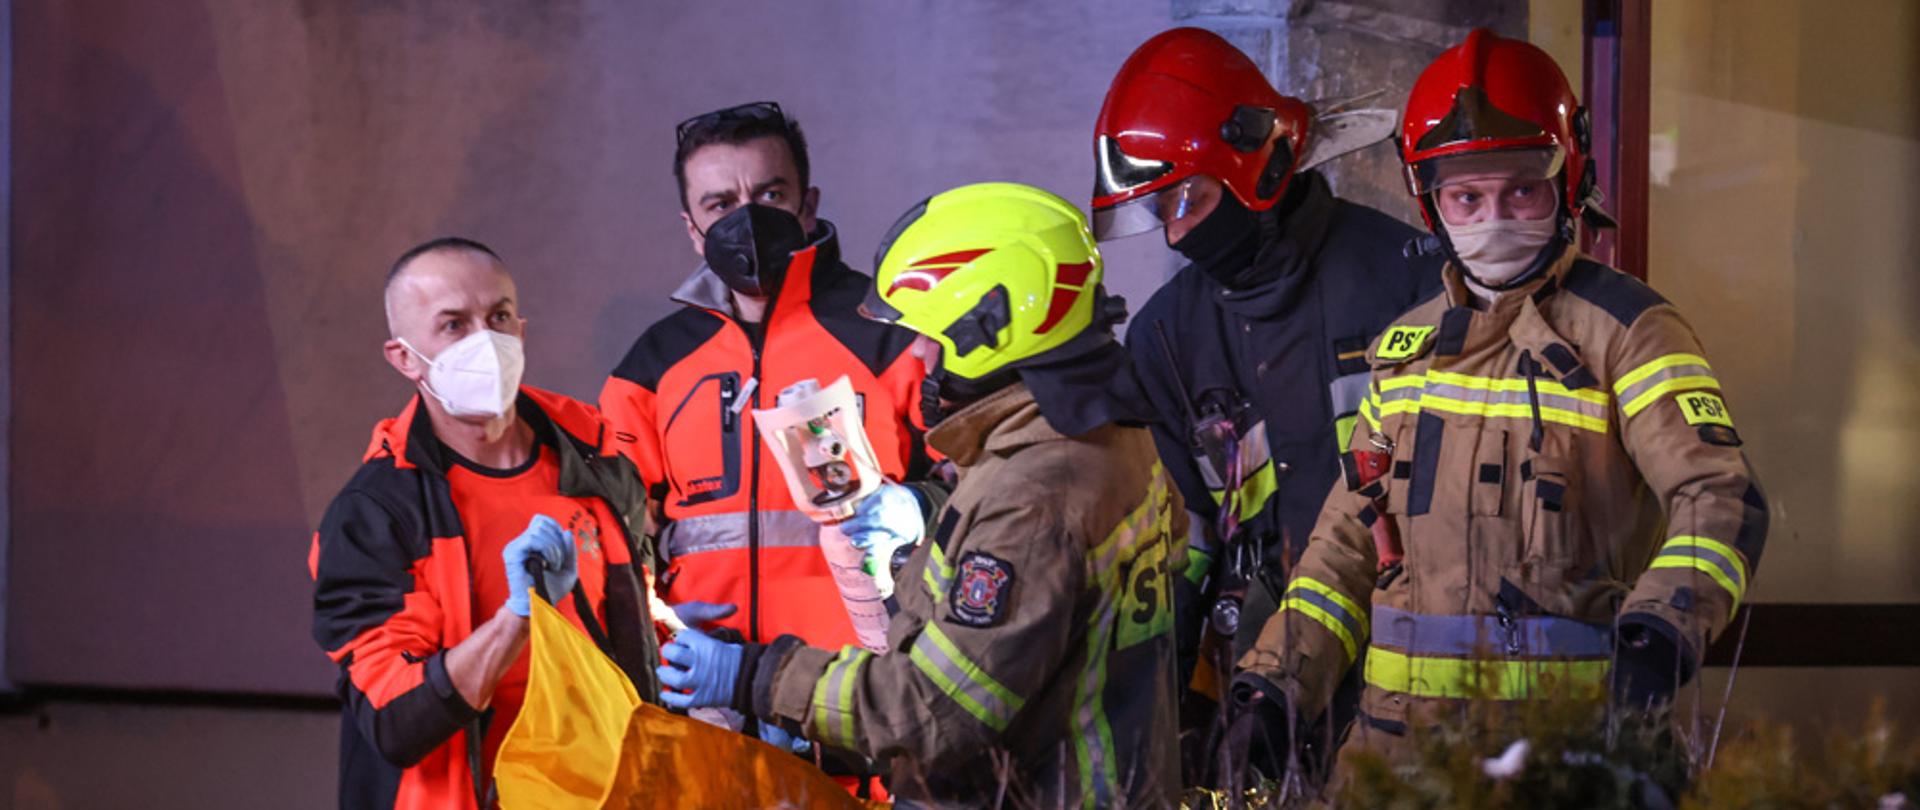 Strażacy i Ratownicy Medyczni ewakuujący osobę poszkodowaną z pożaru.